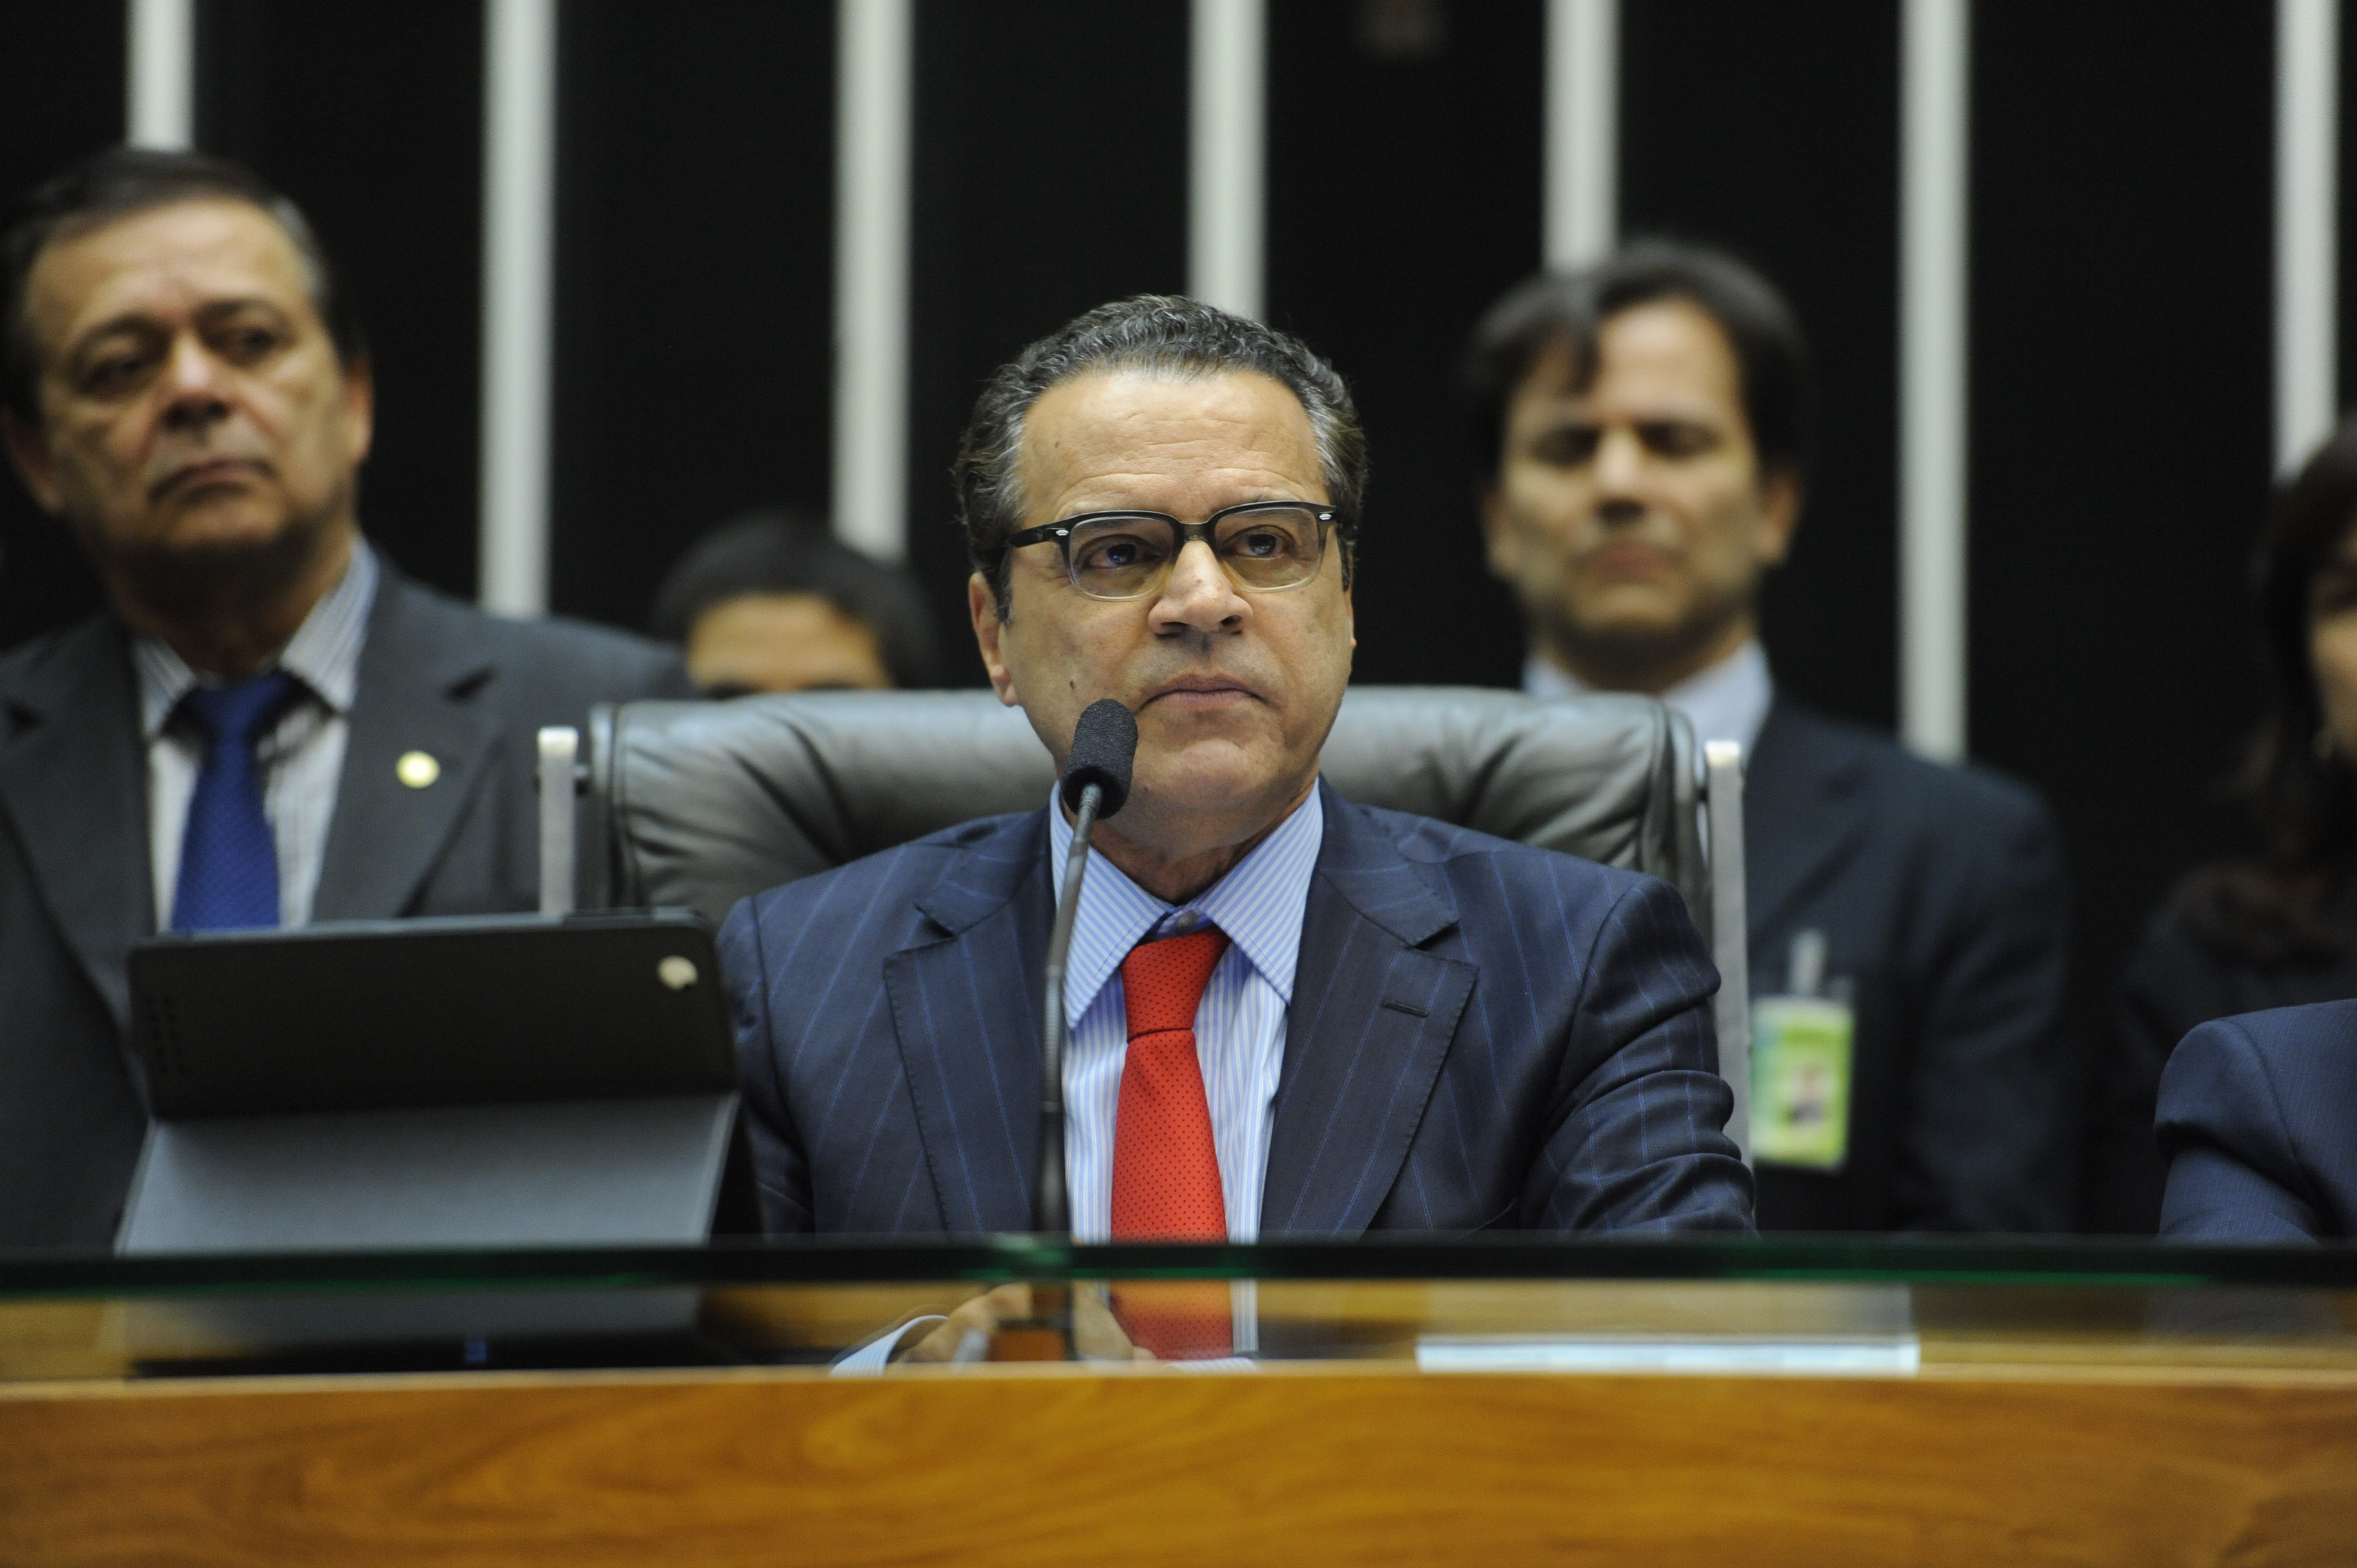 “Cumpri a Constituição e o Regimento no caso de Genoíno”, afirma Henrique Alves